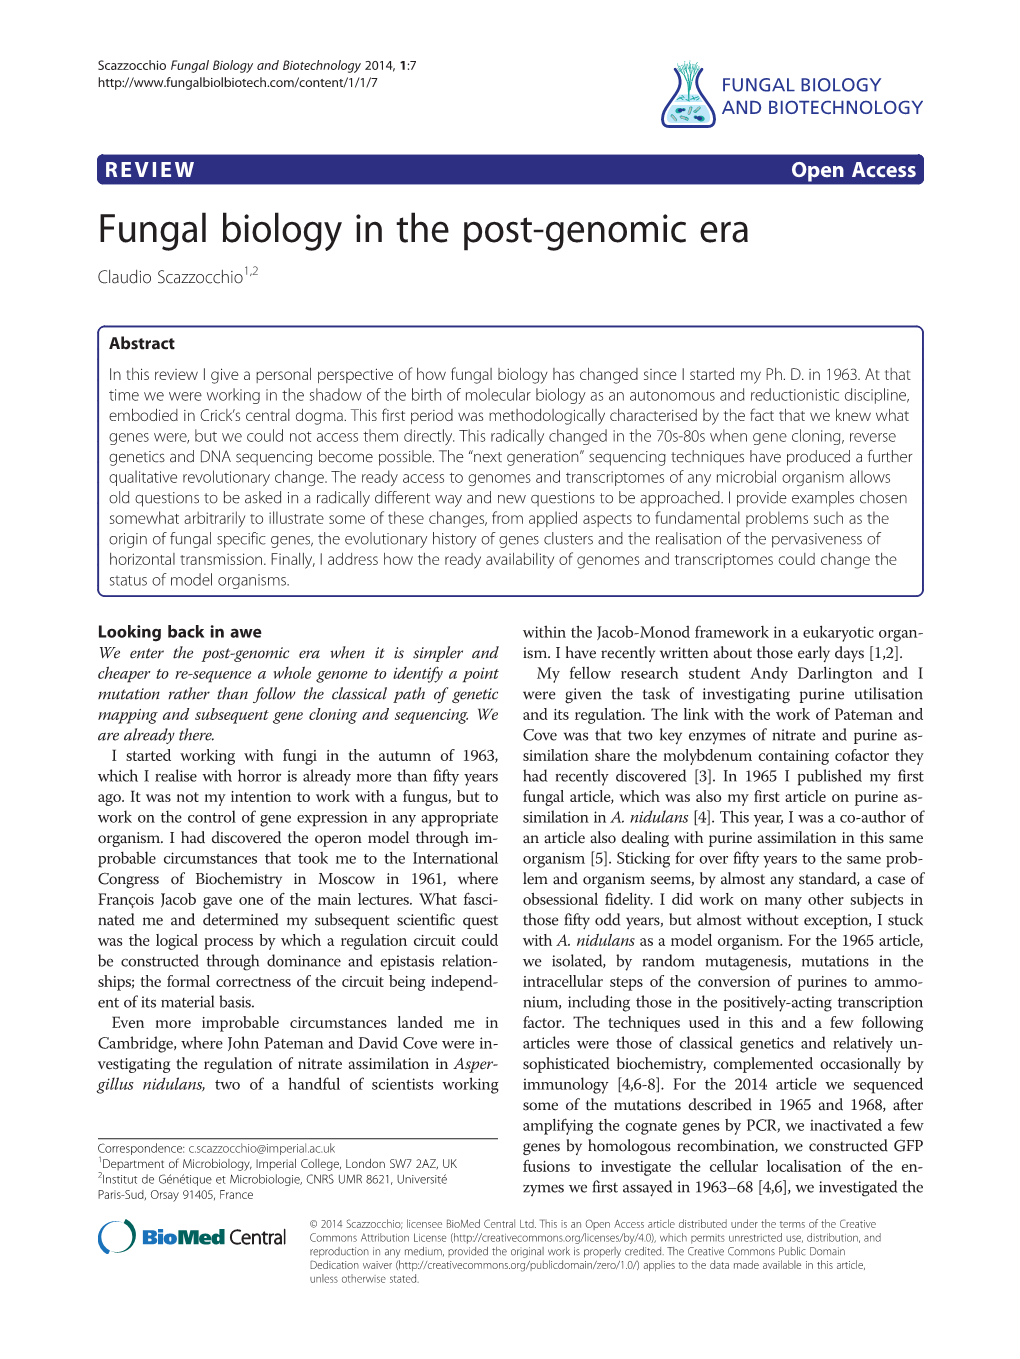 Fungal Biology in the Post-Genomic Era Claudio Scazzocchio1,2